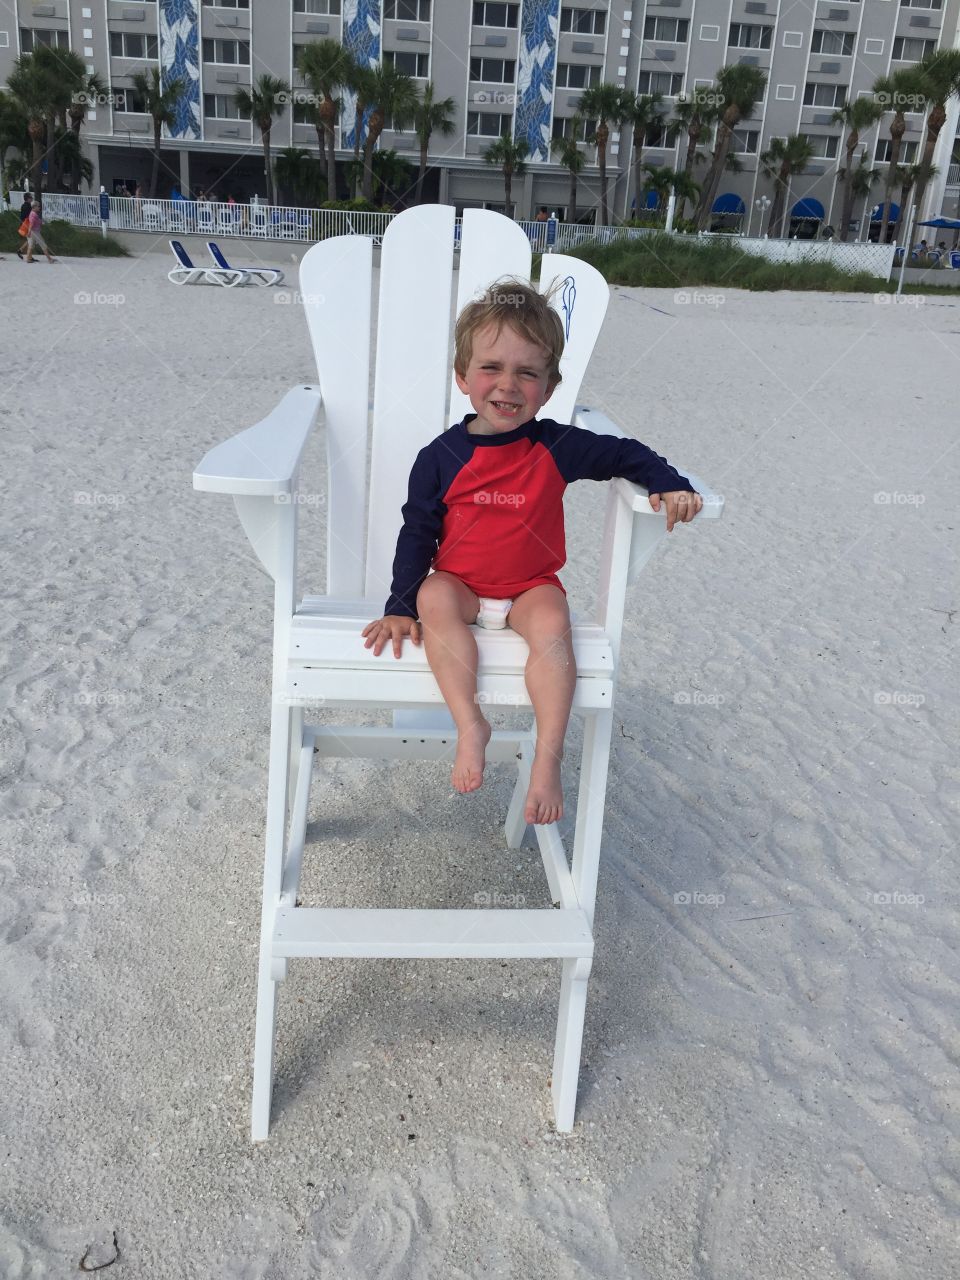 Beach life guard chair 